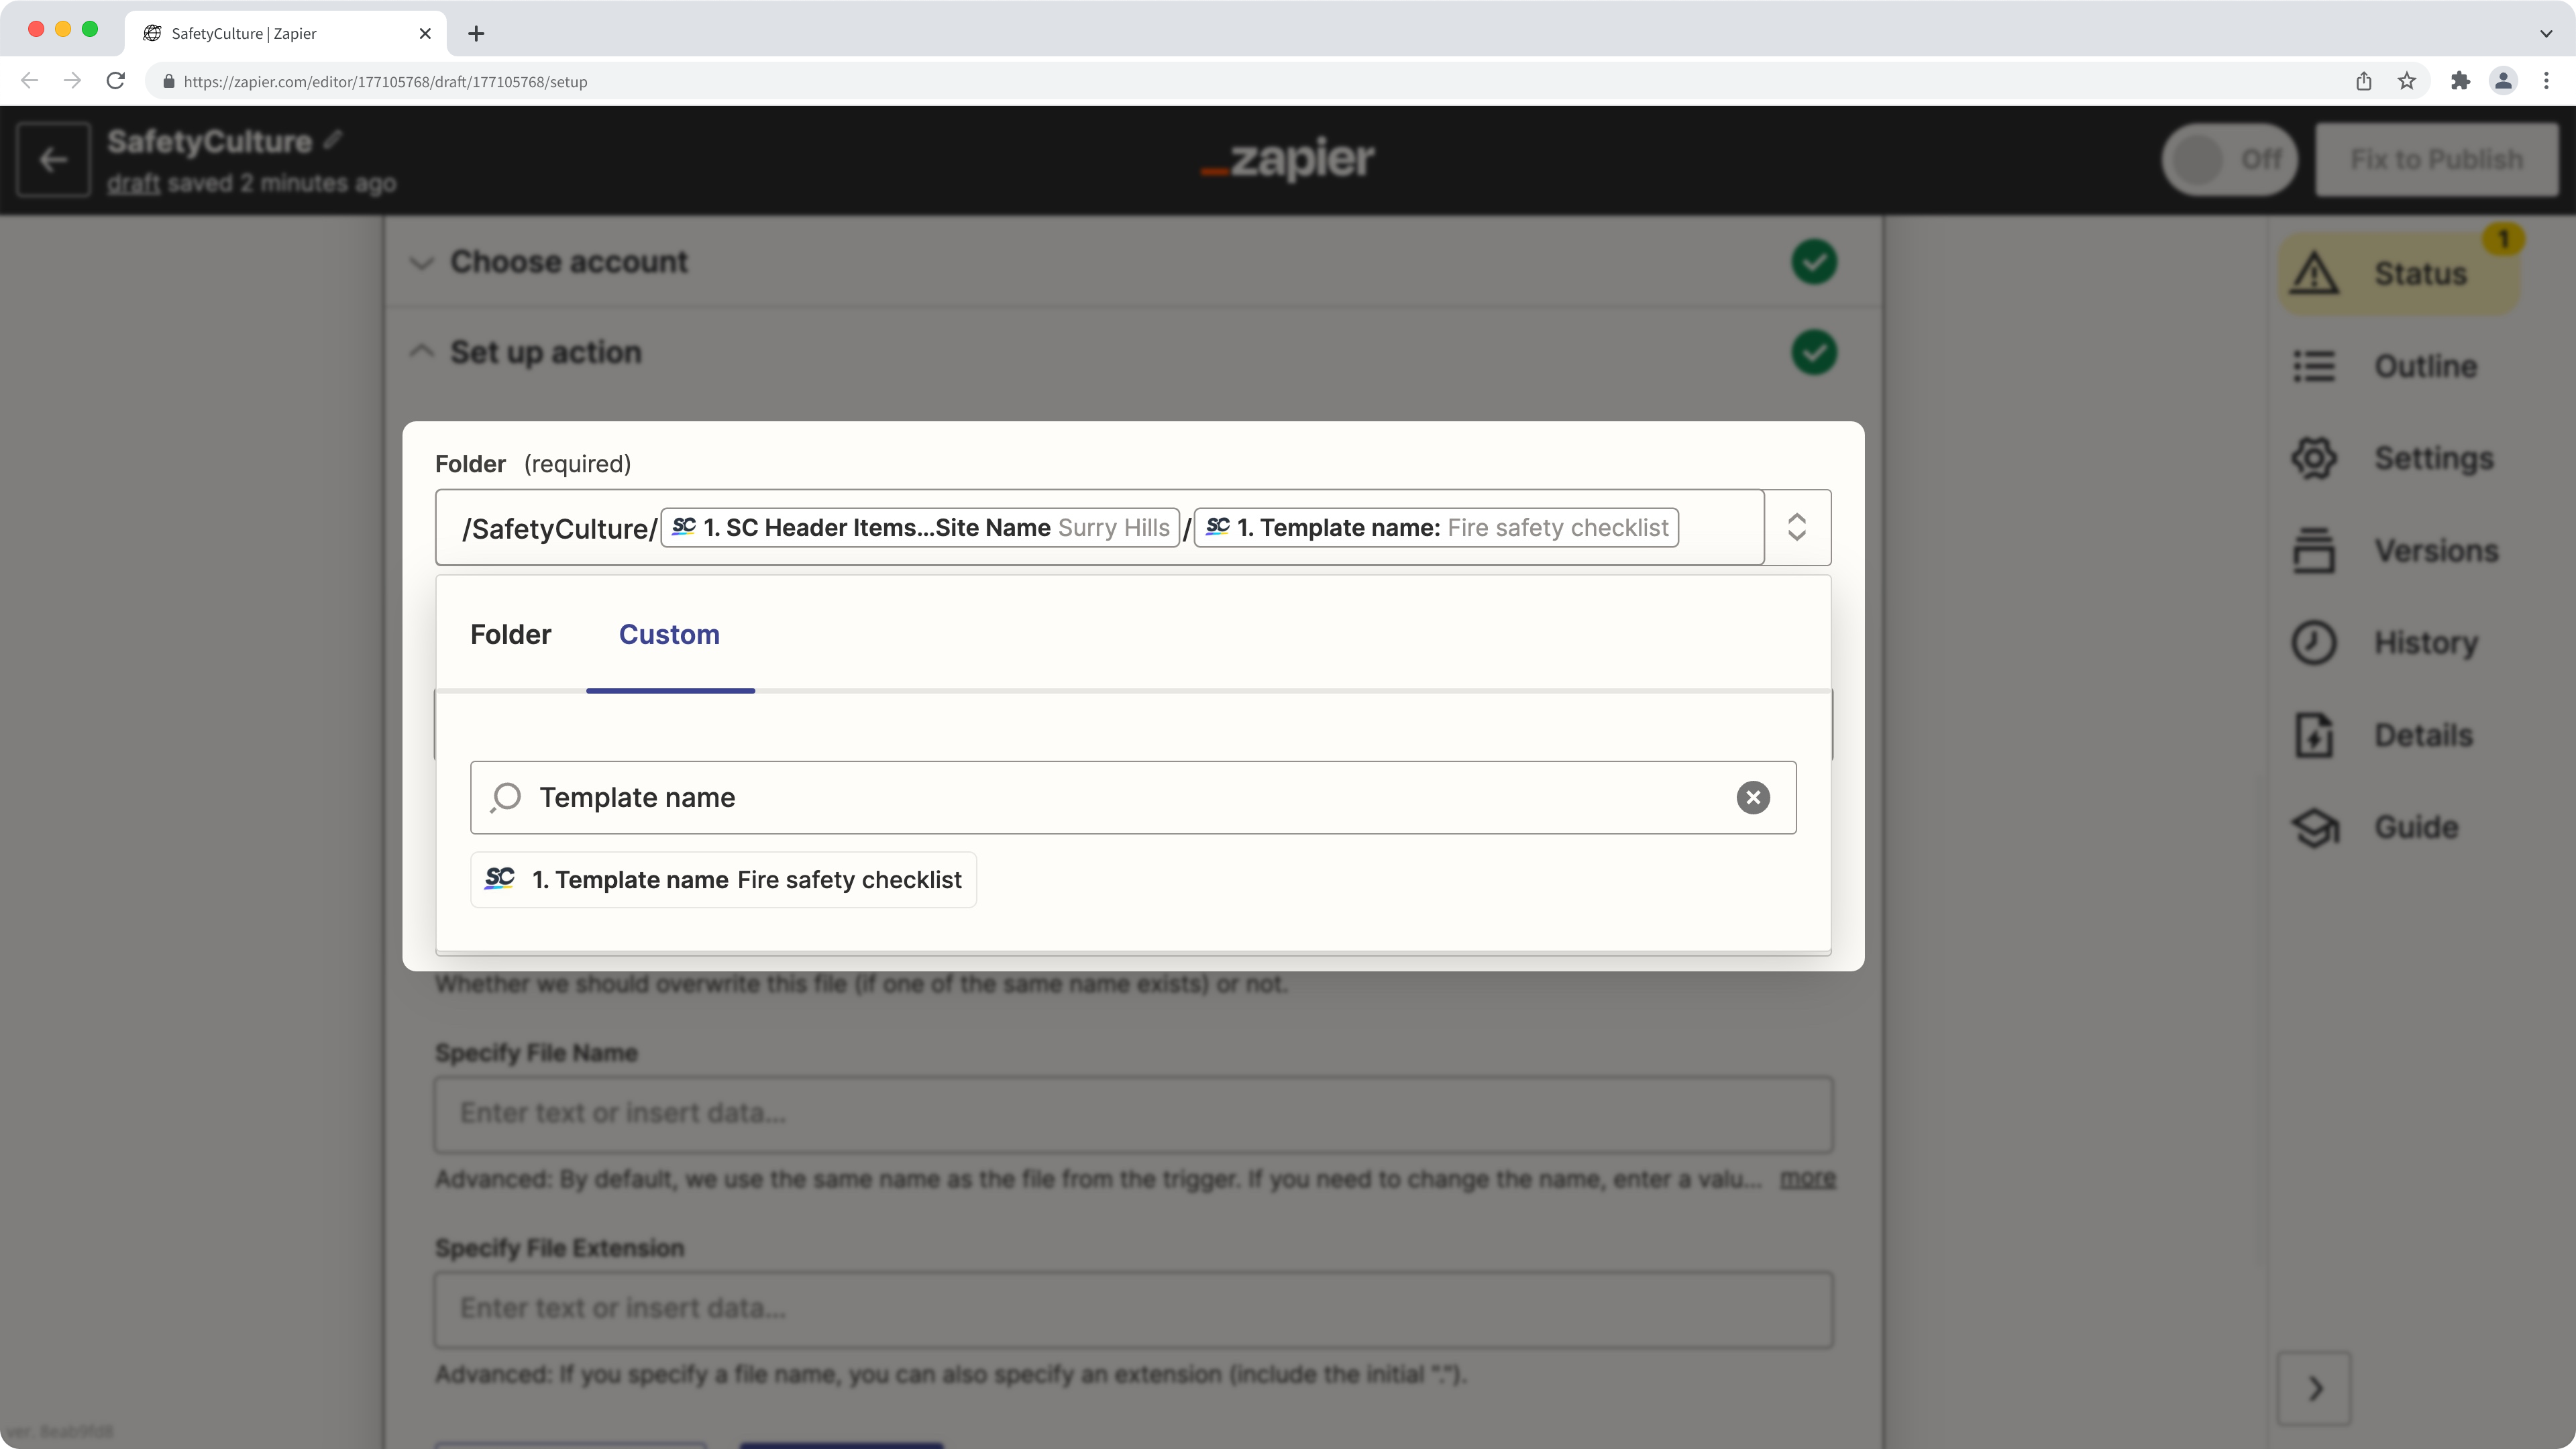 Importer des rapports d'inspection vers Dropbox via une intégration Zapier.